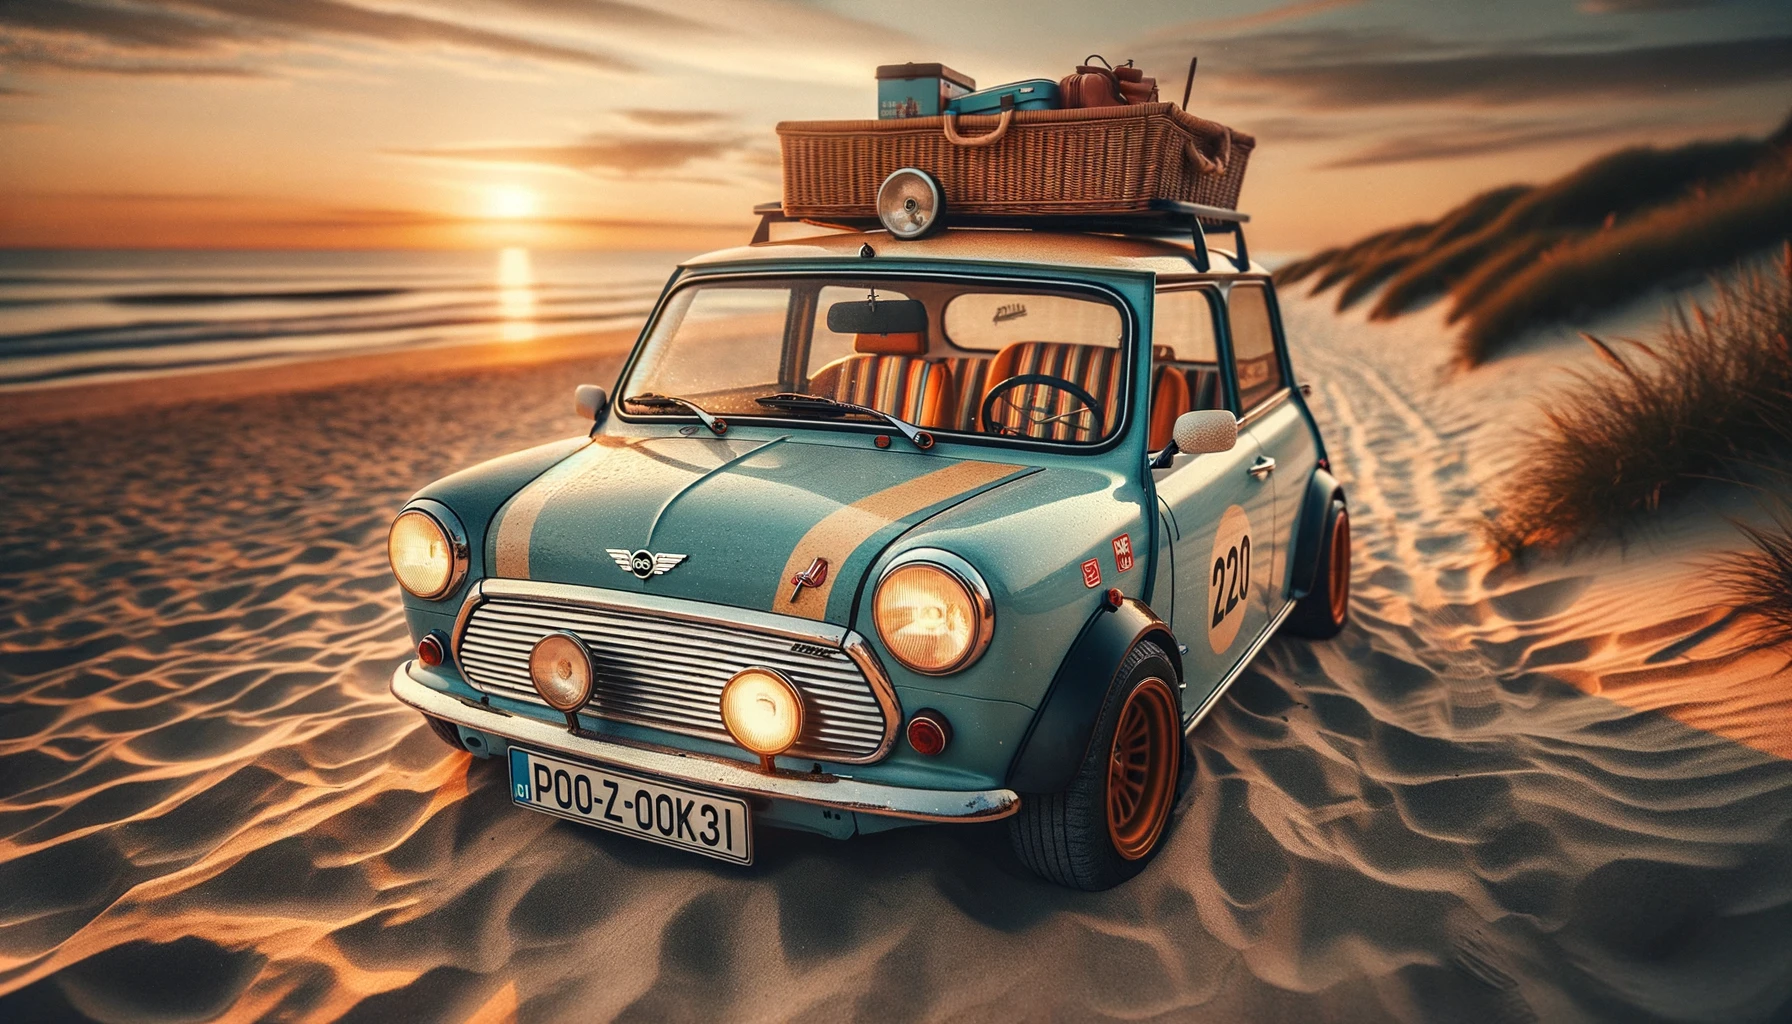 O fotografie orizontală, clară, a unei mașini mici asemănătoare Mini Cooper, parcate pe plajă în timpul apusului. Mașina este portocalie cu plafonul negru